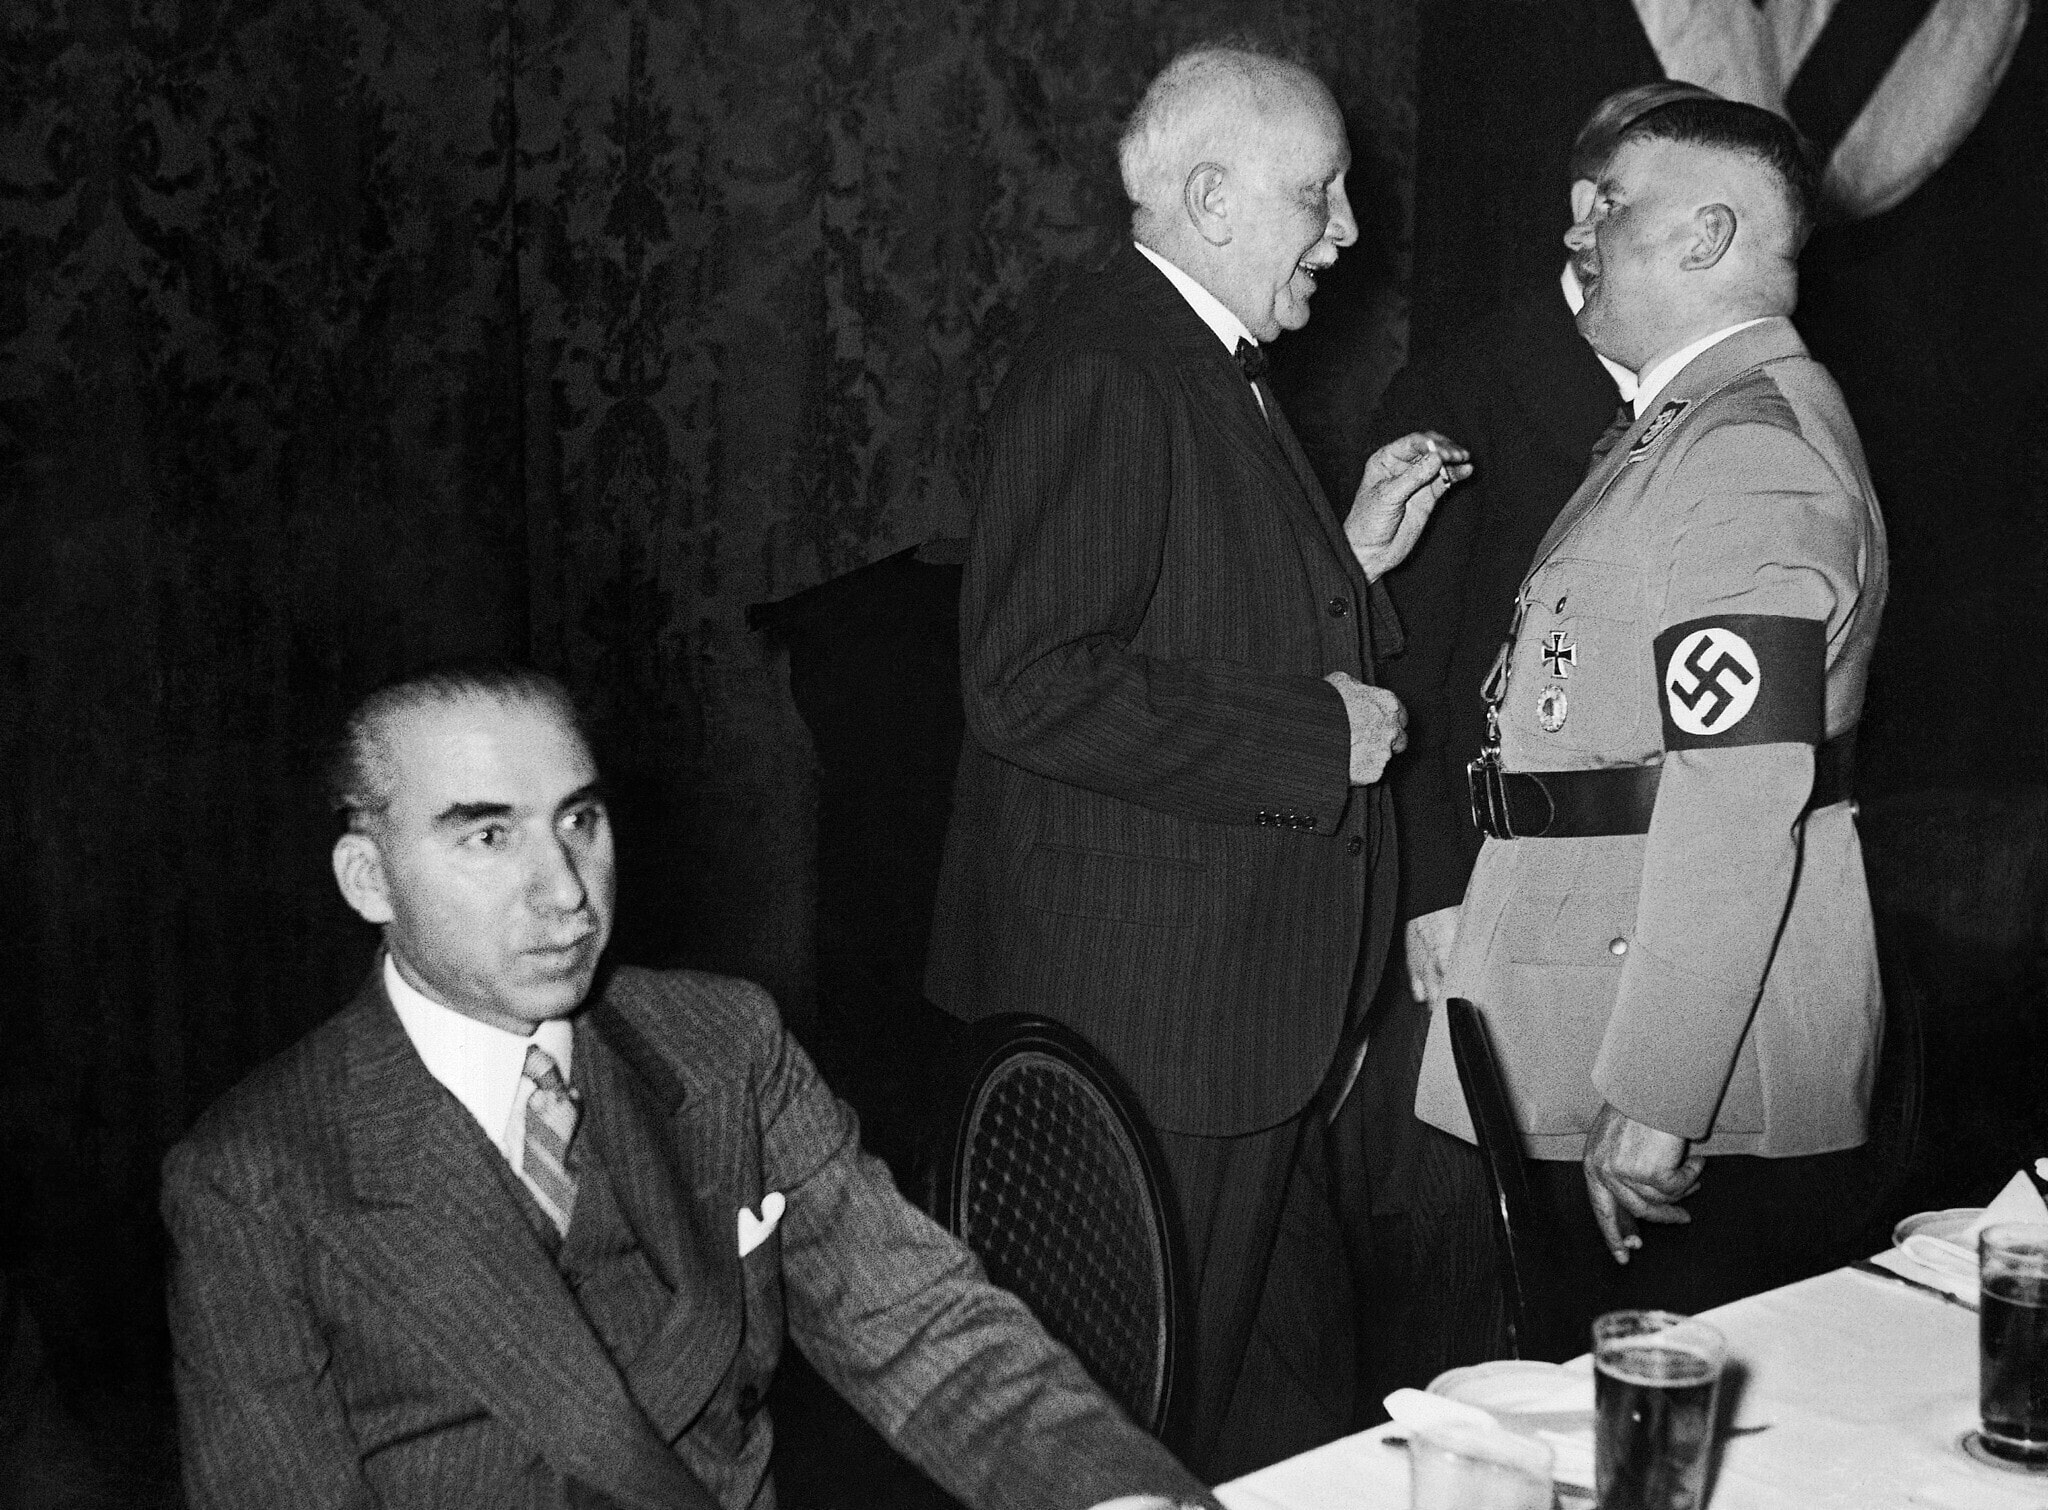 חבר המפלגה הנאצית, השר ואחד ממייסדי האס-אה ארנסט רהם (מימין), משוחח עם המלחין המפורסם ריכרד שטראוס (במרכז), בברלין, 7 בדצמבר 1933. משמאל יושב השגריר הטורקי כמאל א-דין פאשה (צילום: AP Photo)